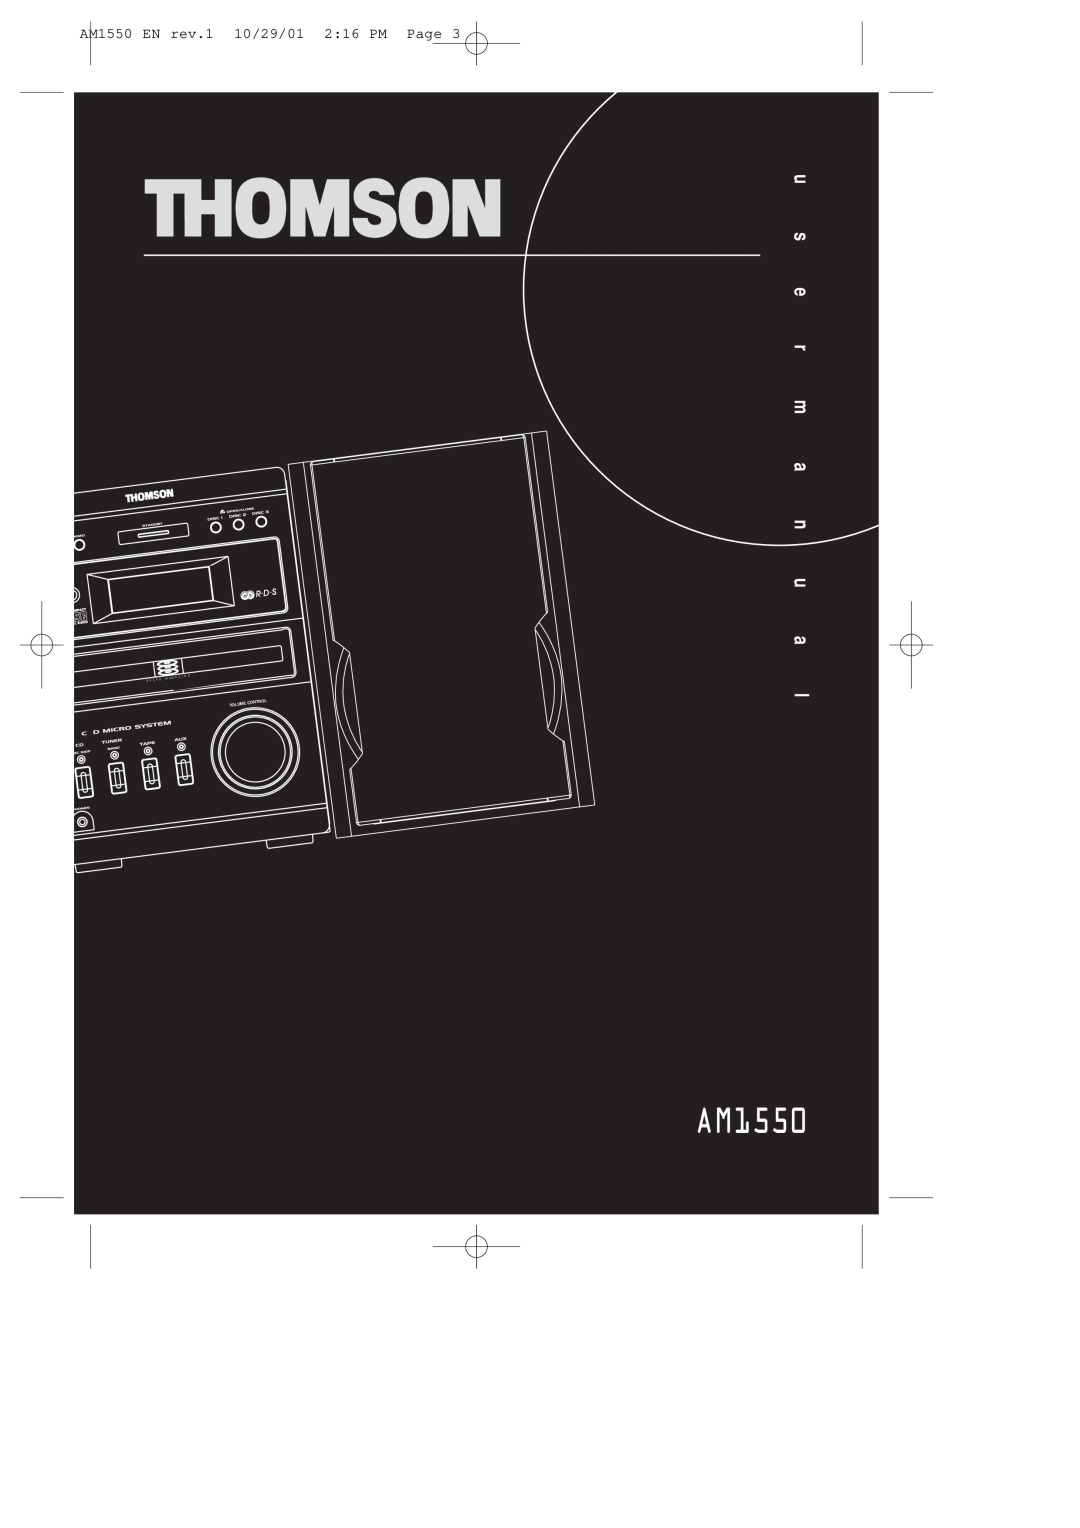 Technicolor - Thomson manual AM1550 EN rev.1 10/29/01 2 16 PM Page, Volume, Control, M Ag A Z I N, 3 ¥ C ¥ D 